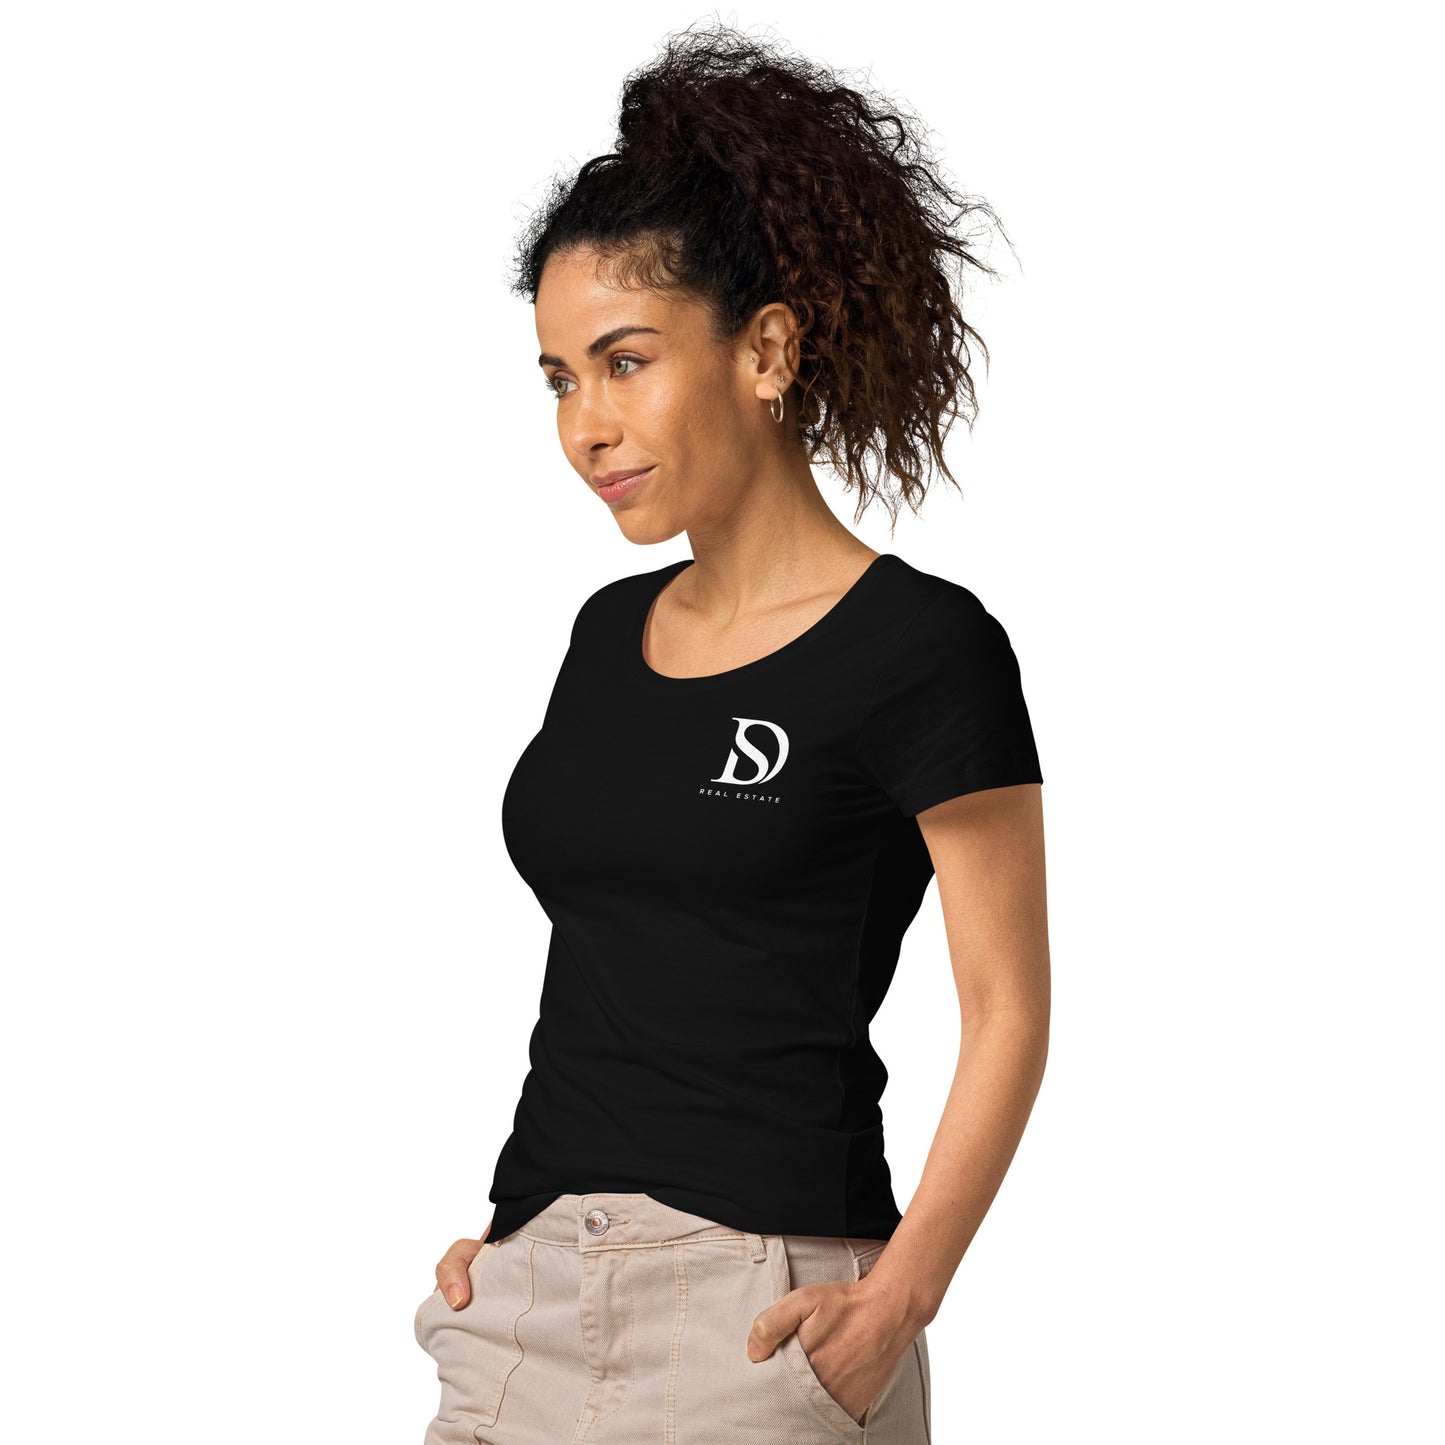 Devina's basic organic t-shirt